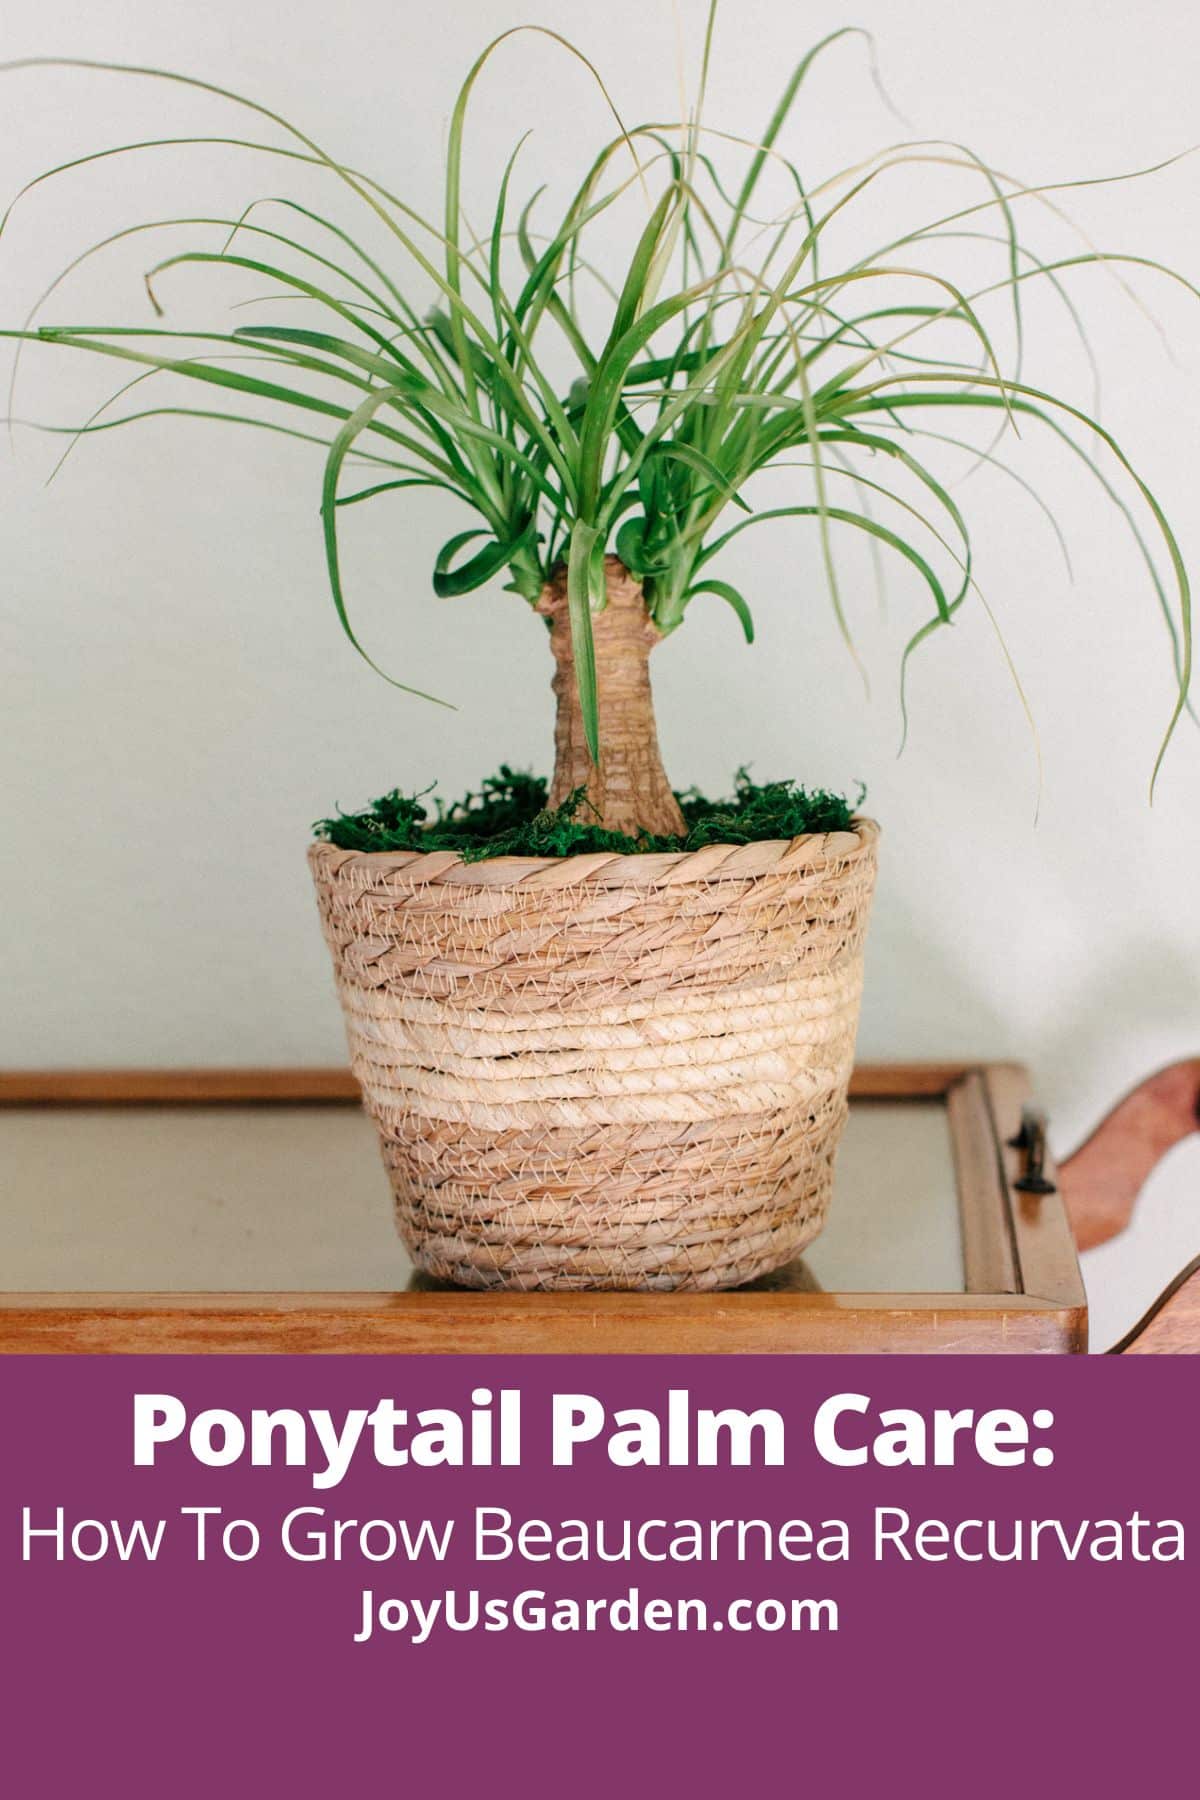  Ponytail Palm kopšana: Kā audzēt Beaucarnea Recurvata